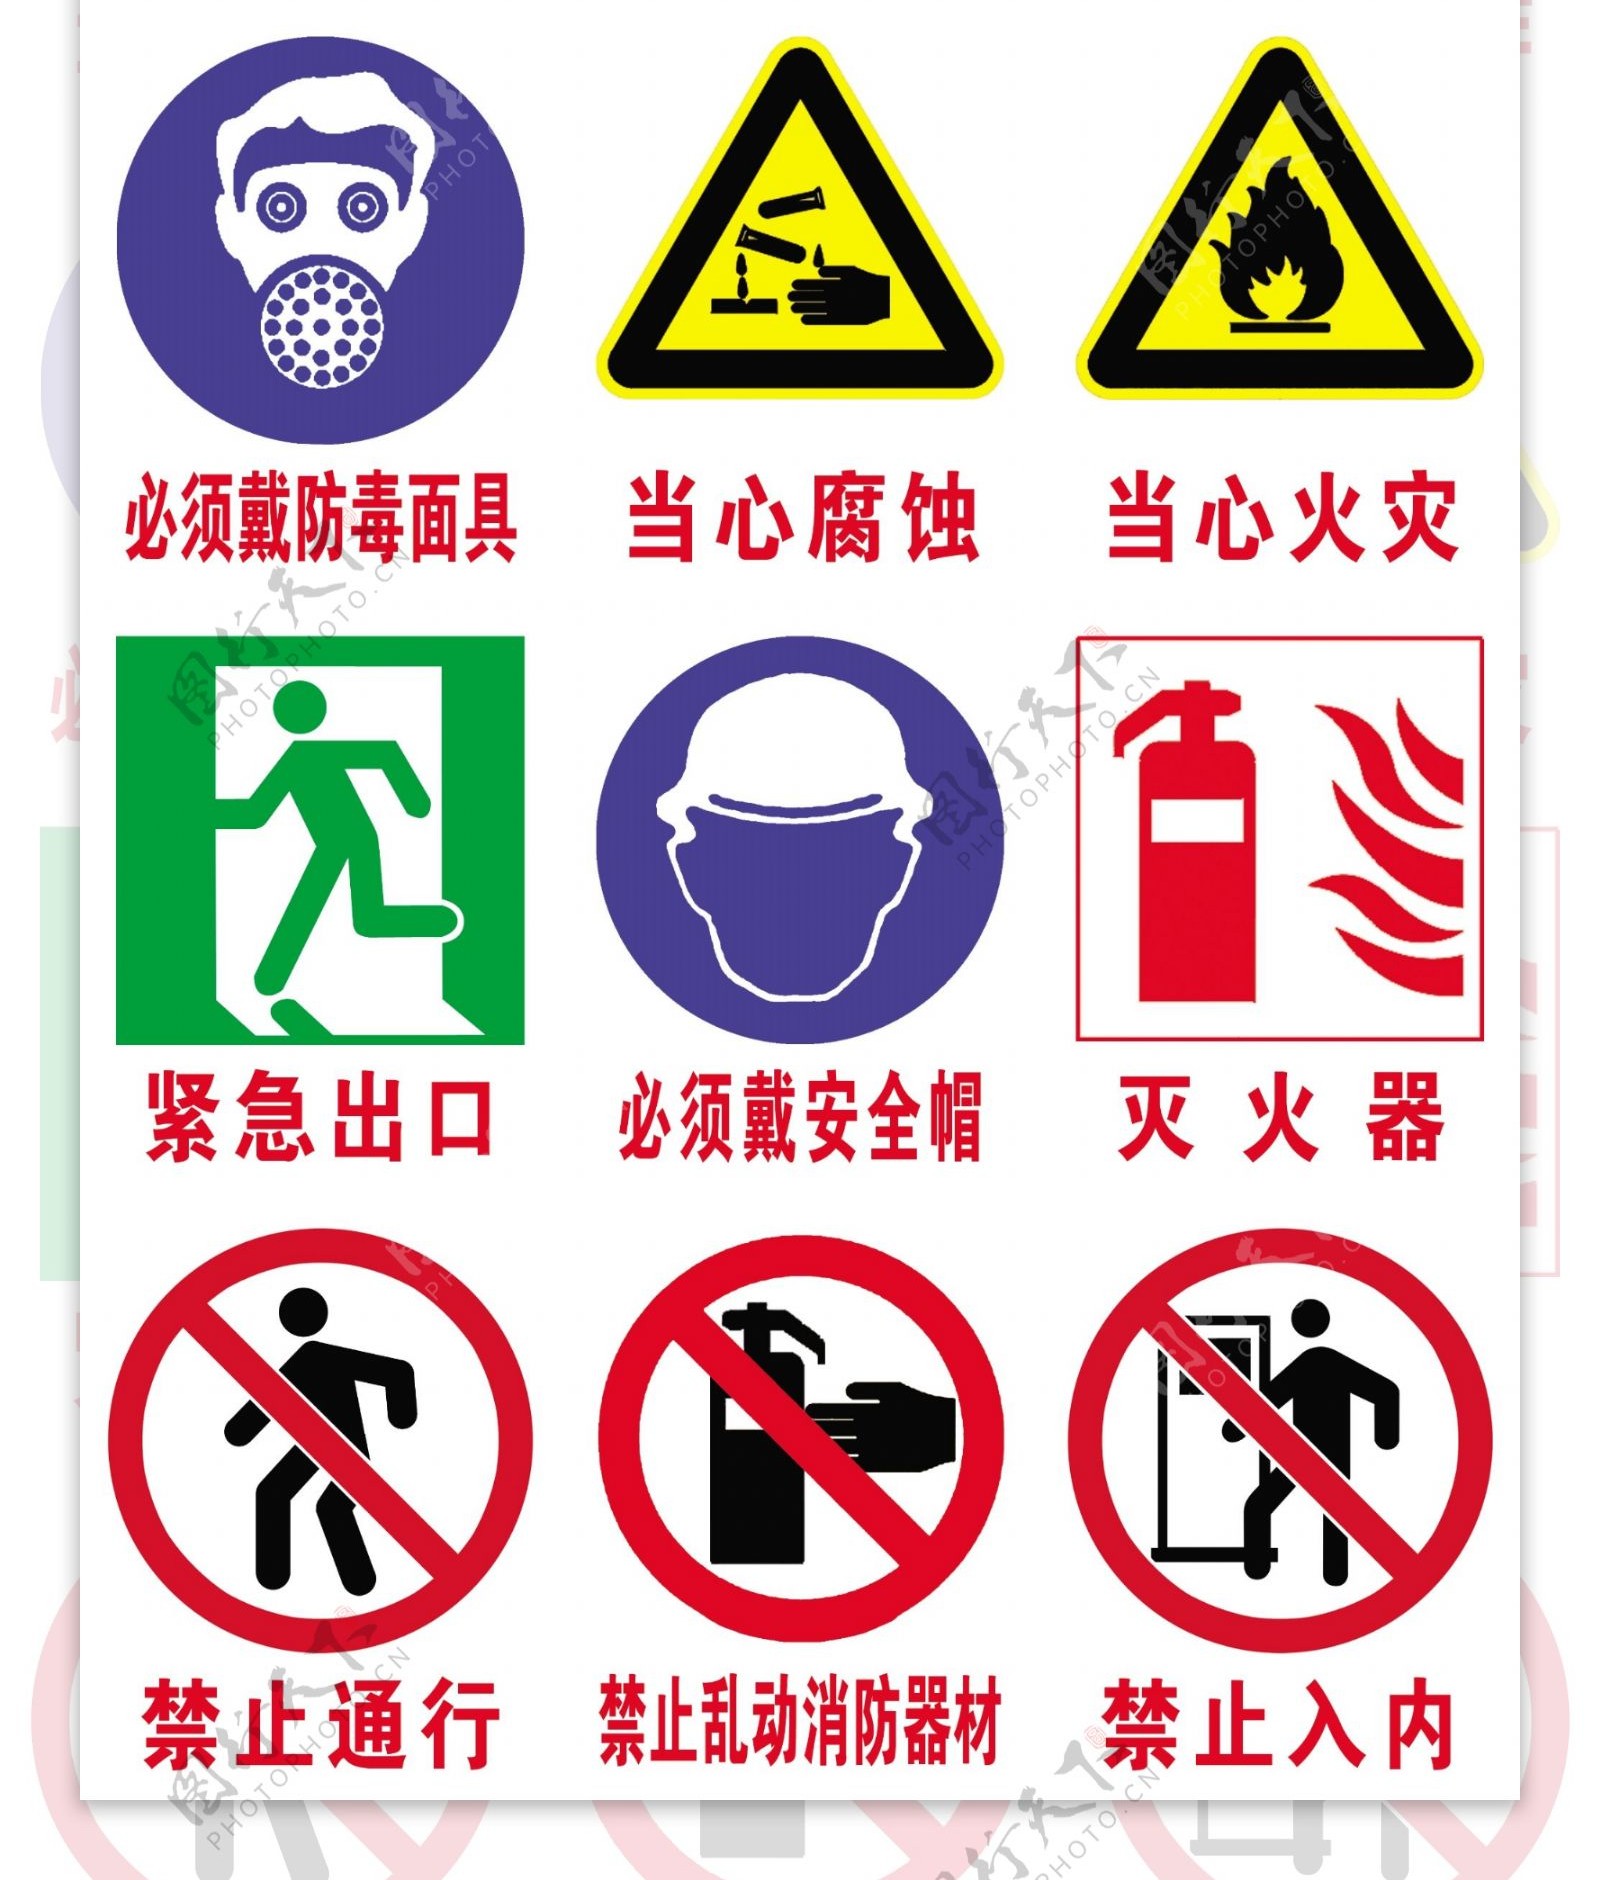 道路交通安全标志图片